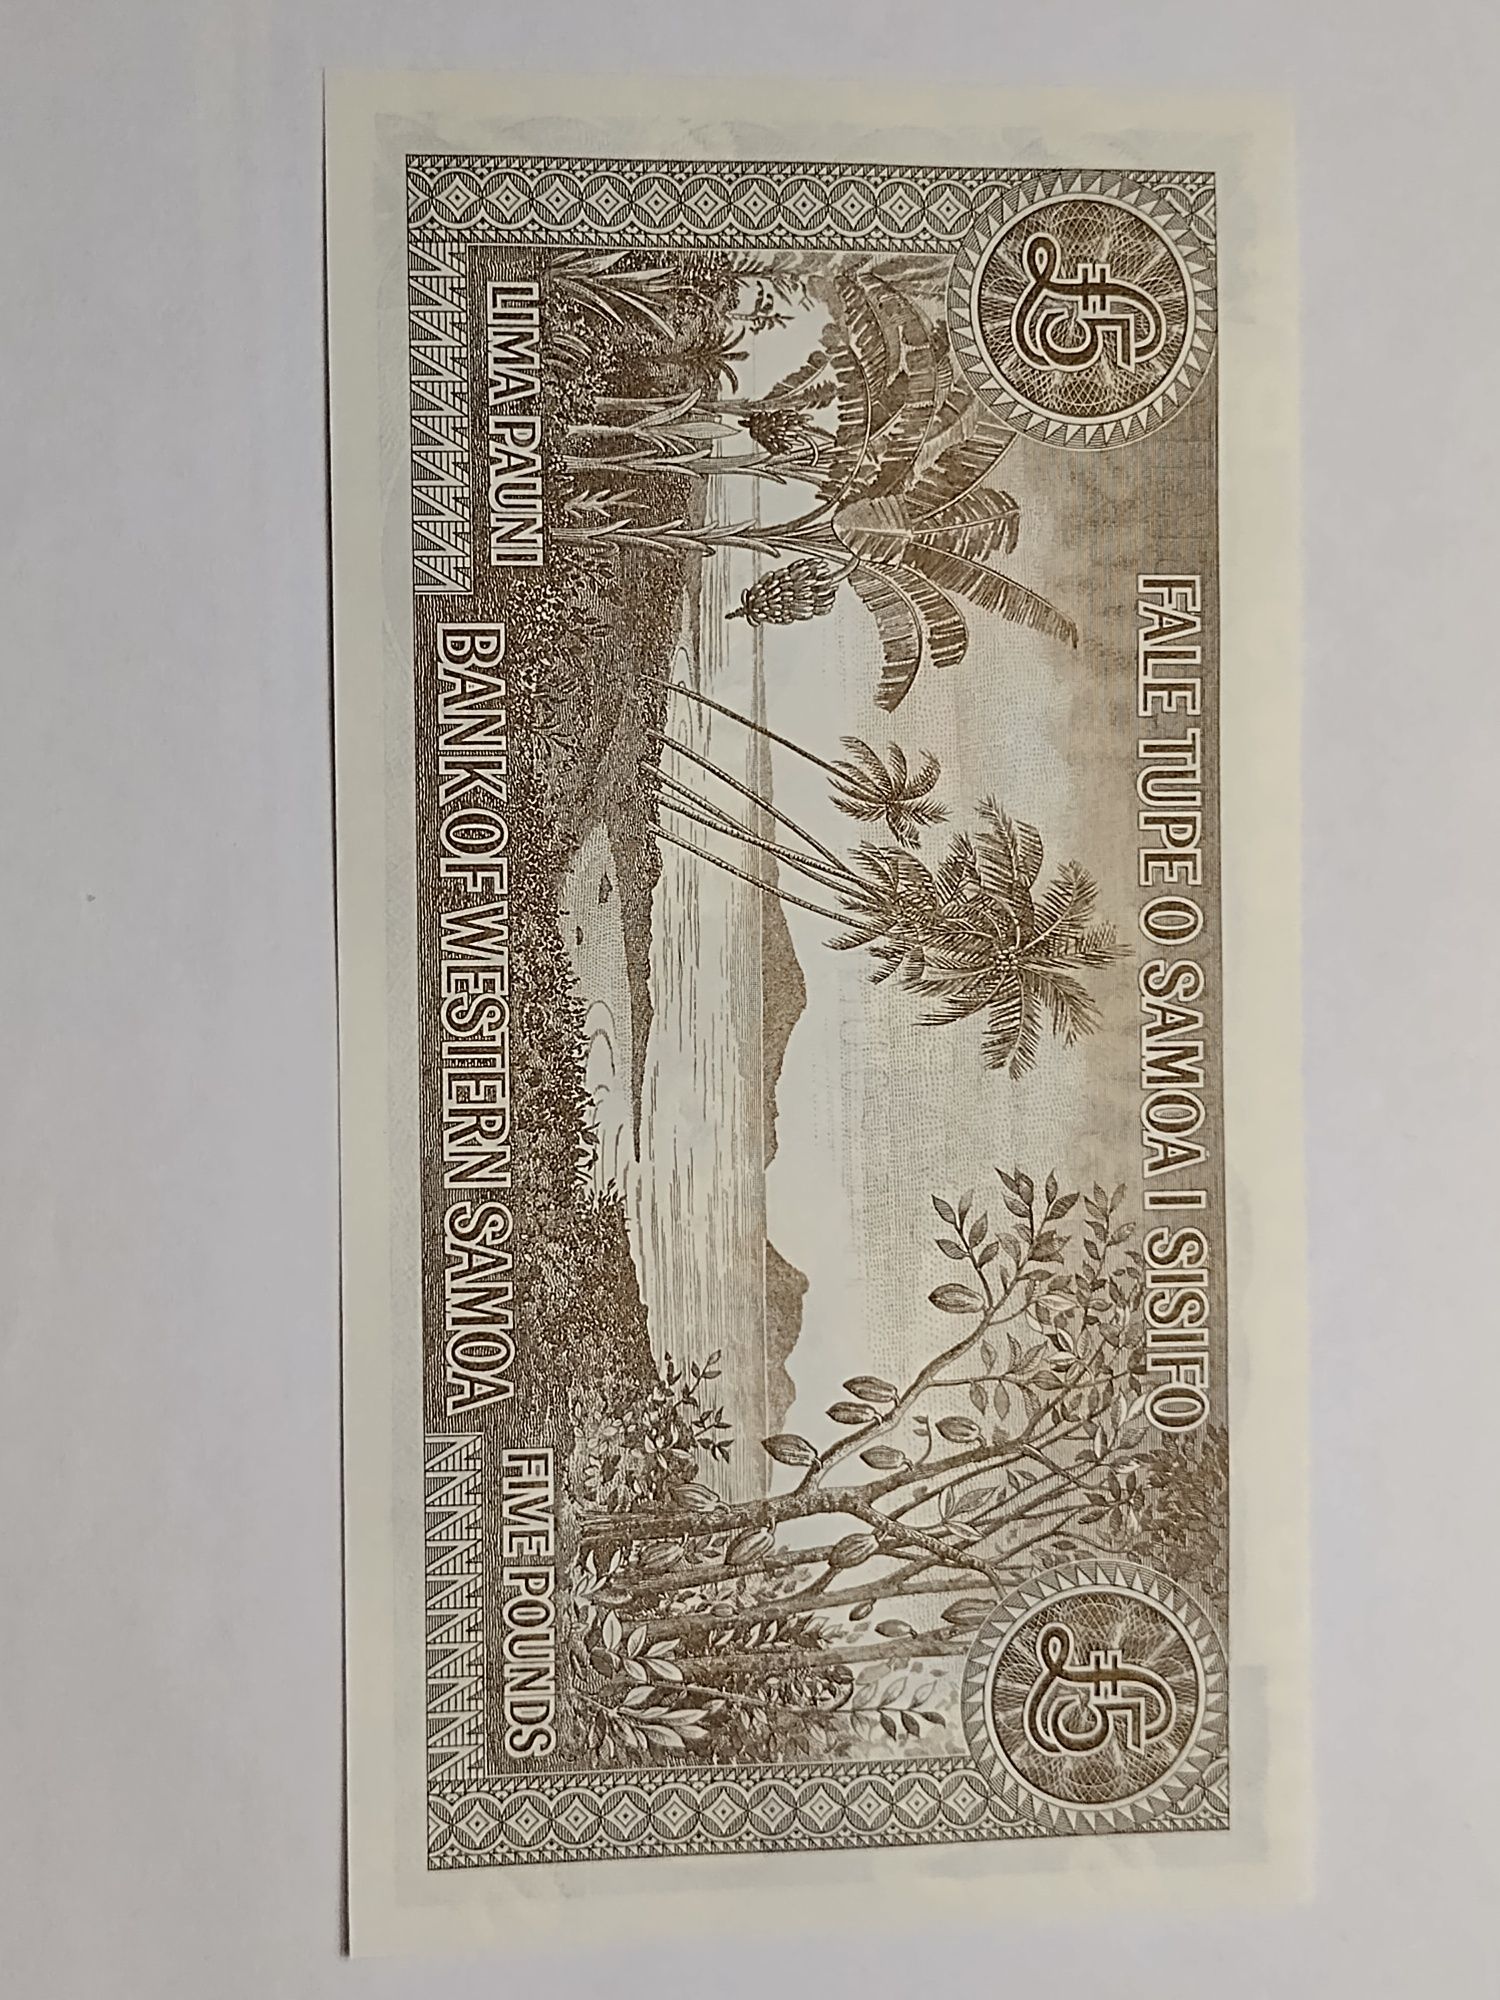 Banknot 5 funtów Samoa Zachodnie